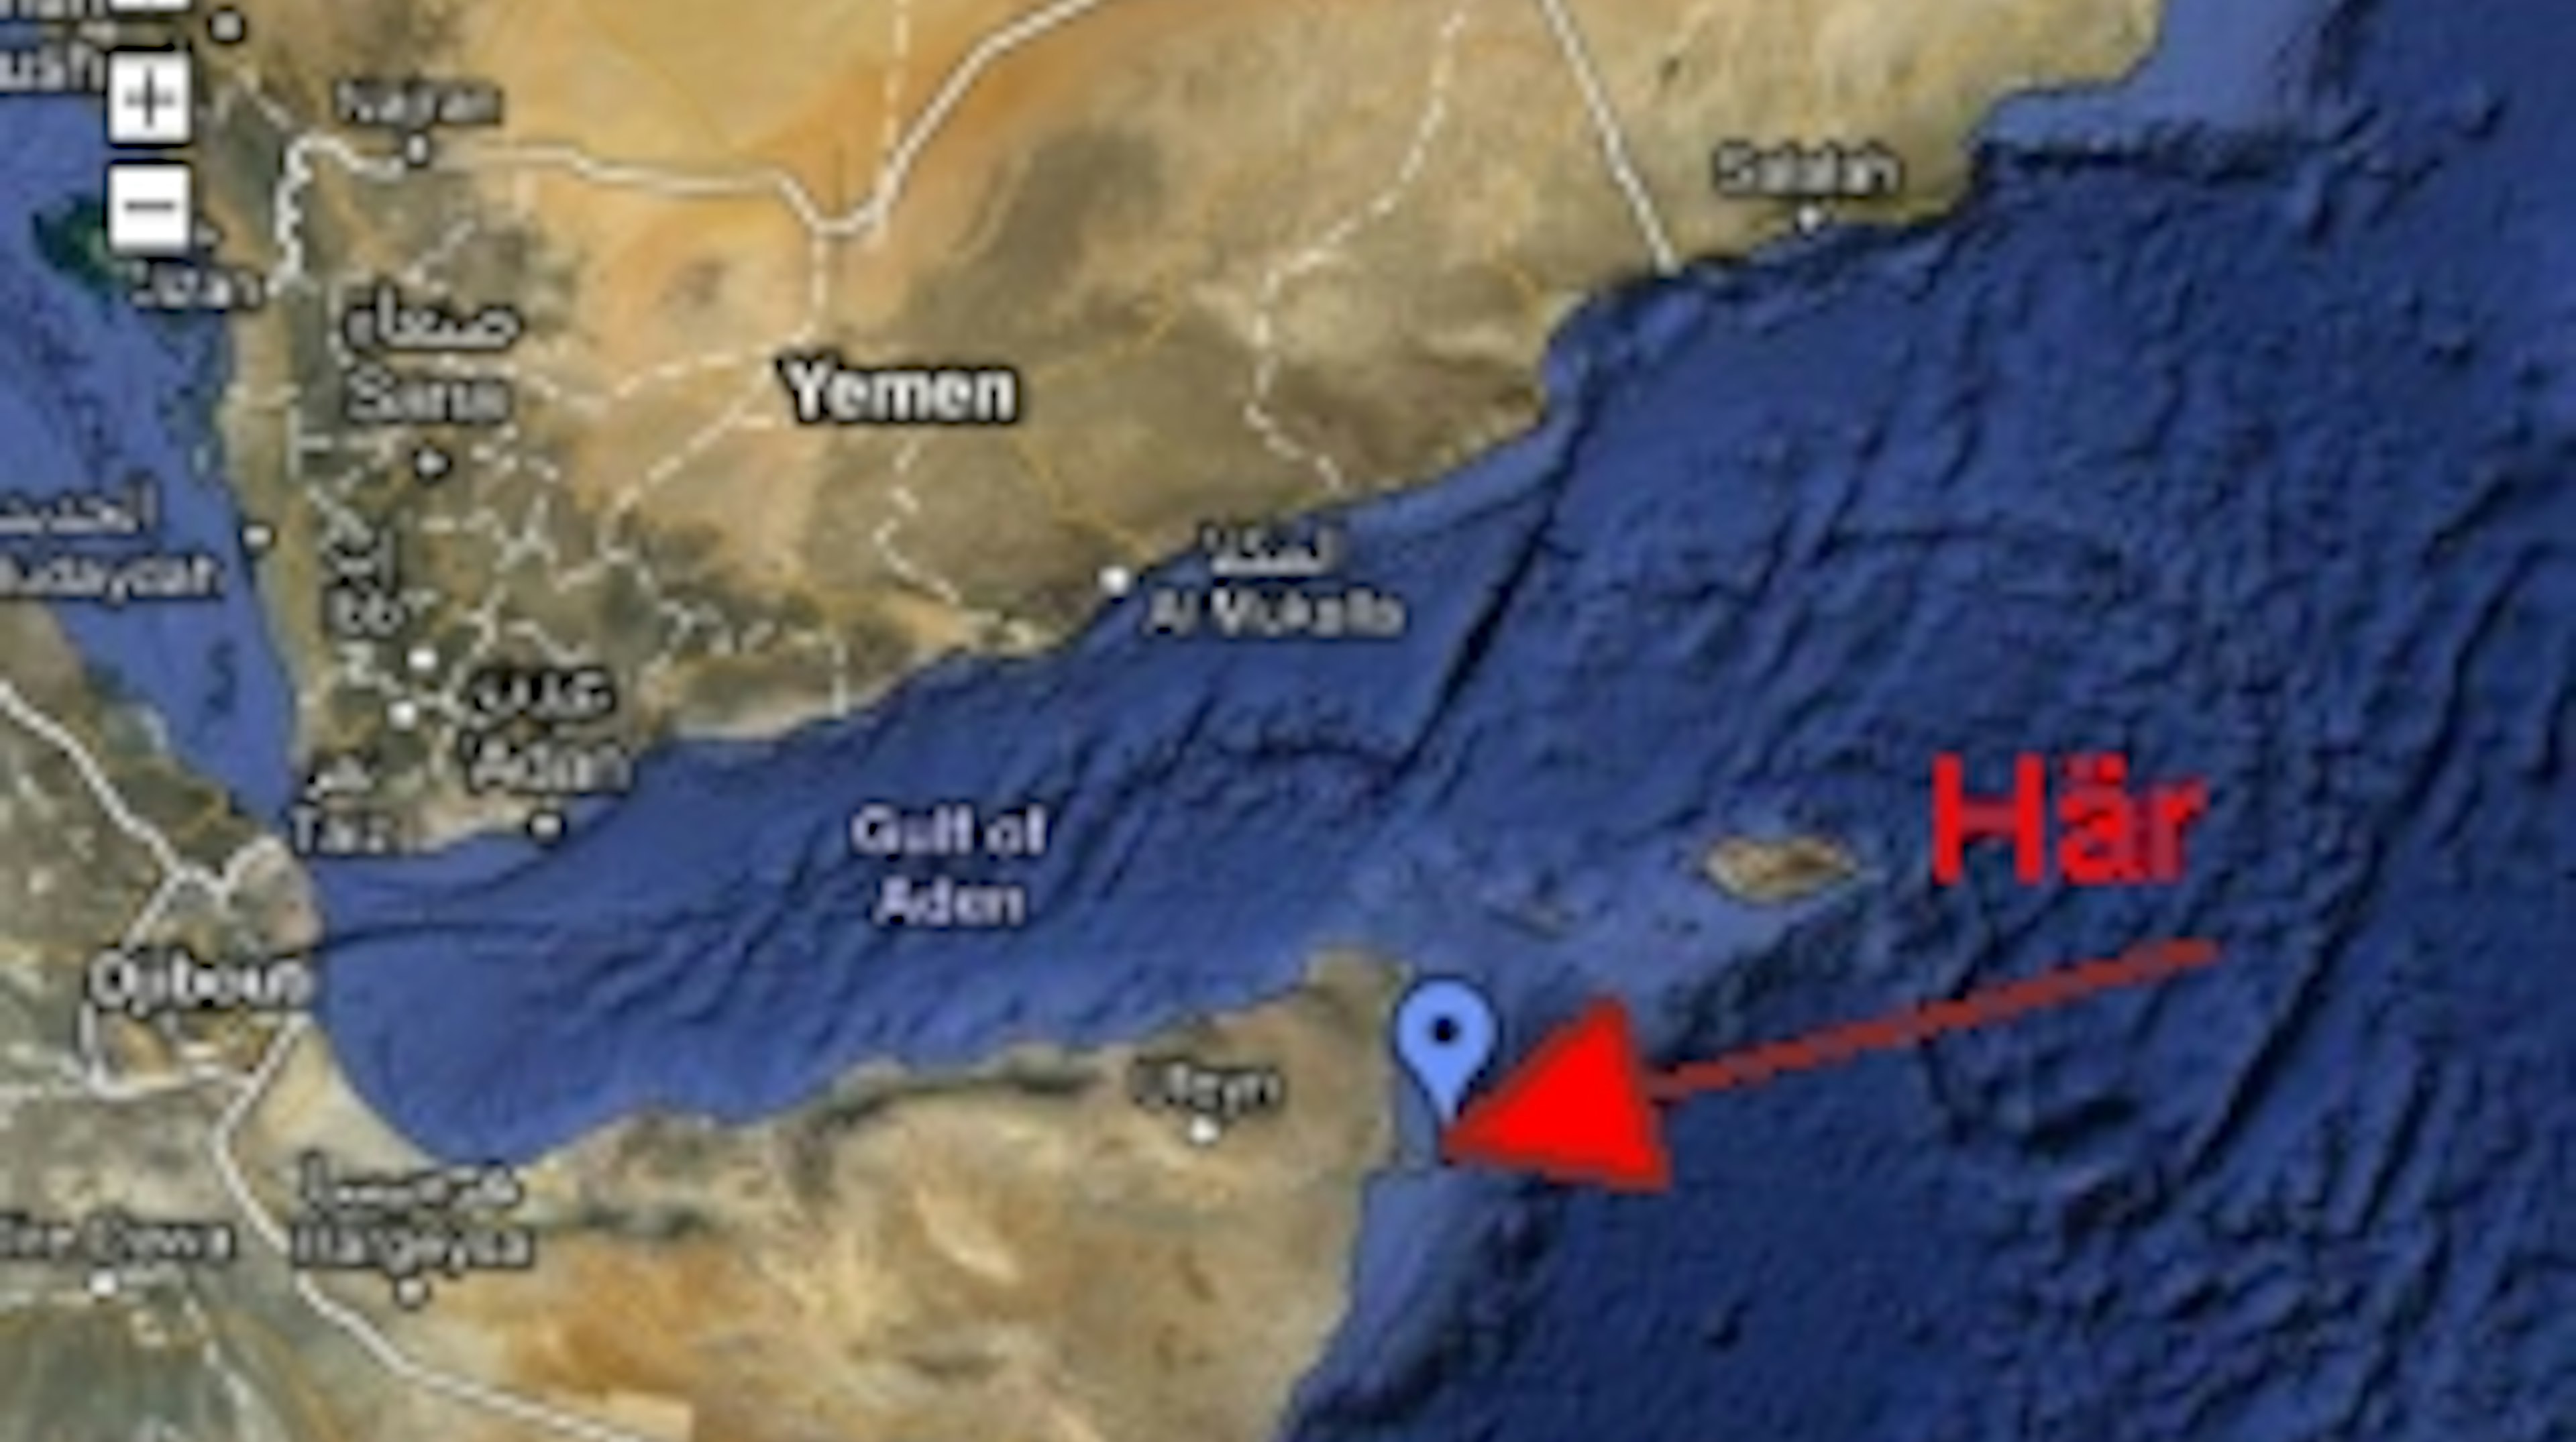 Dansk familj på världsomsegling kapad av pirater utanför Somalia